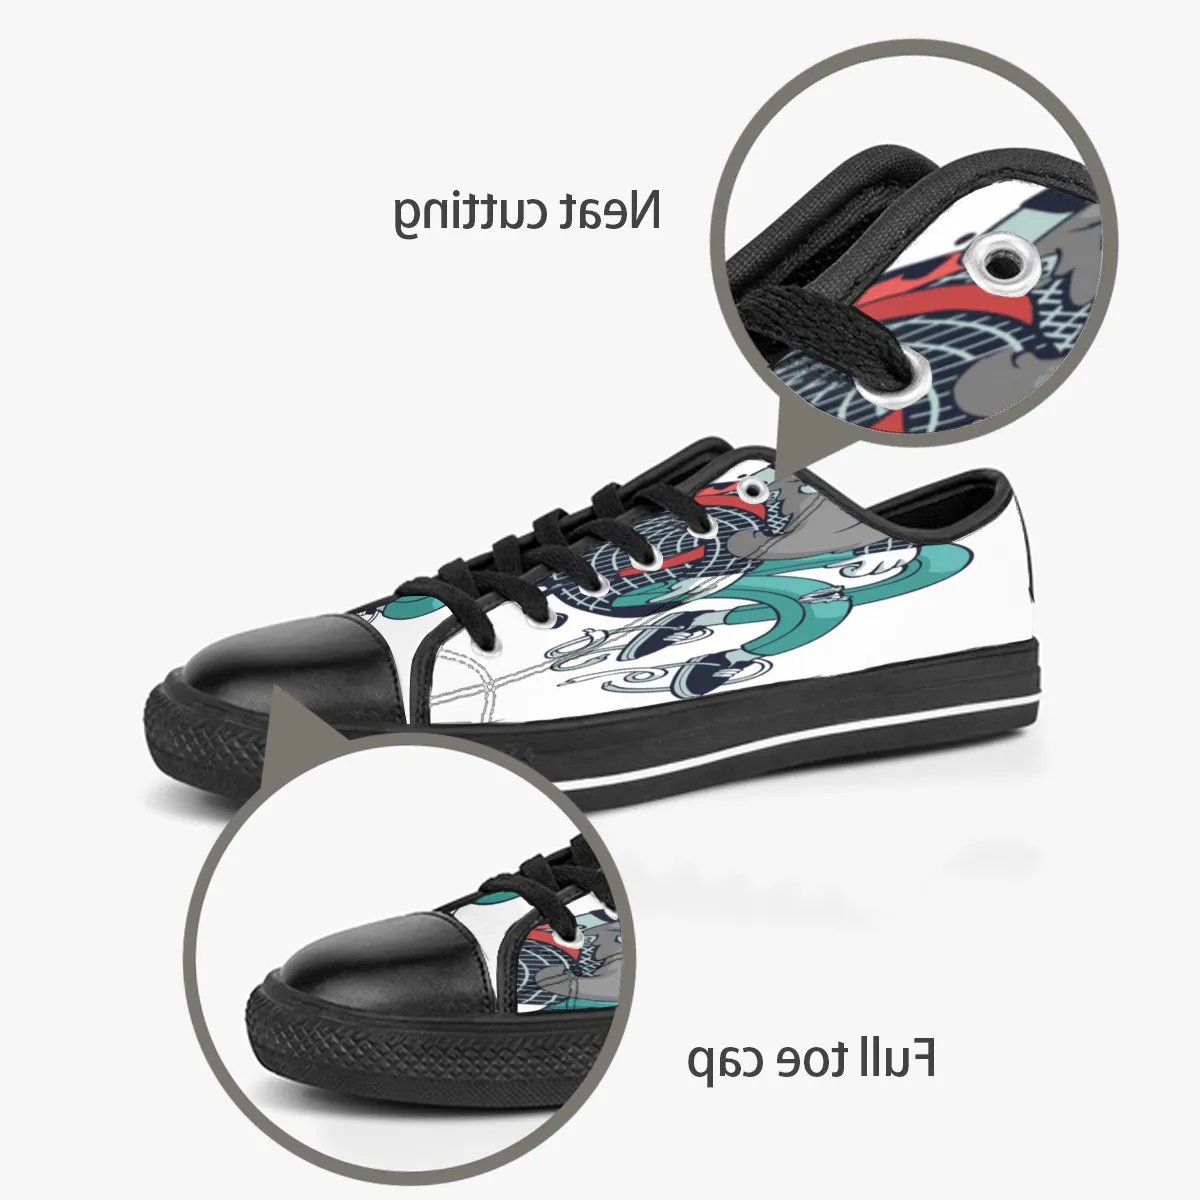 Gai homens mulheres diy sapatos personalizados baixo superior lona skate triplo preto personalização impressão uv tênis esportivos dongwu 173-8